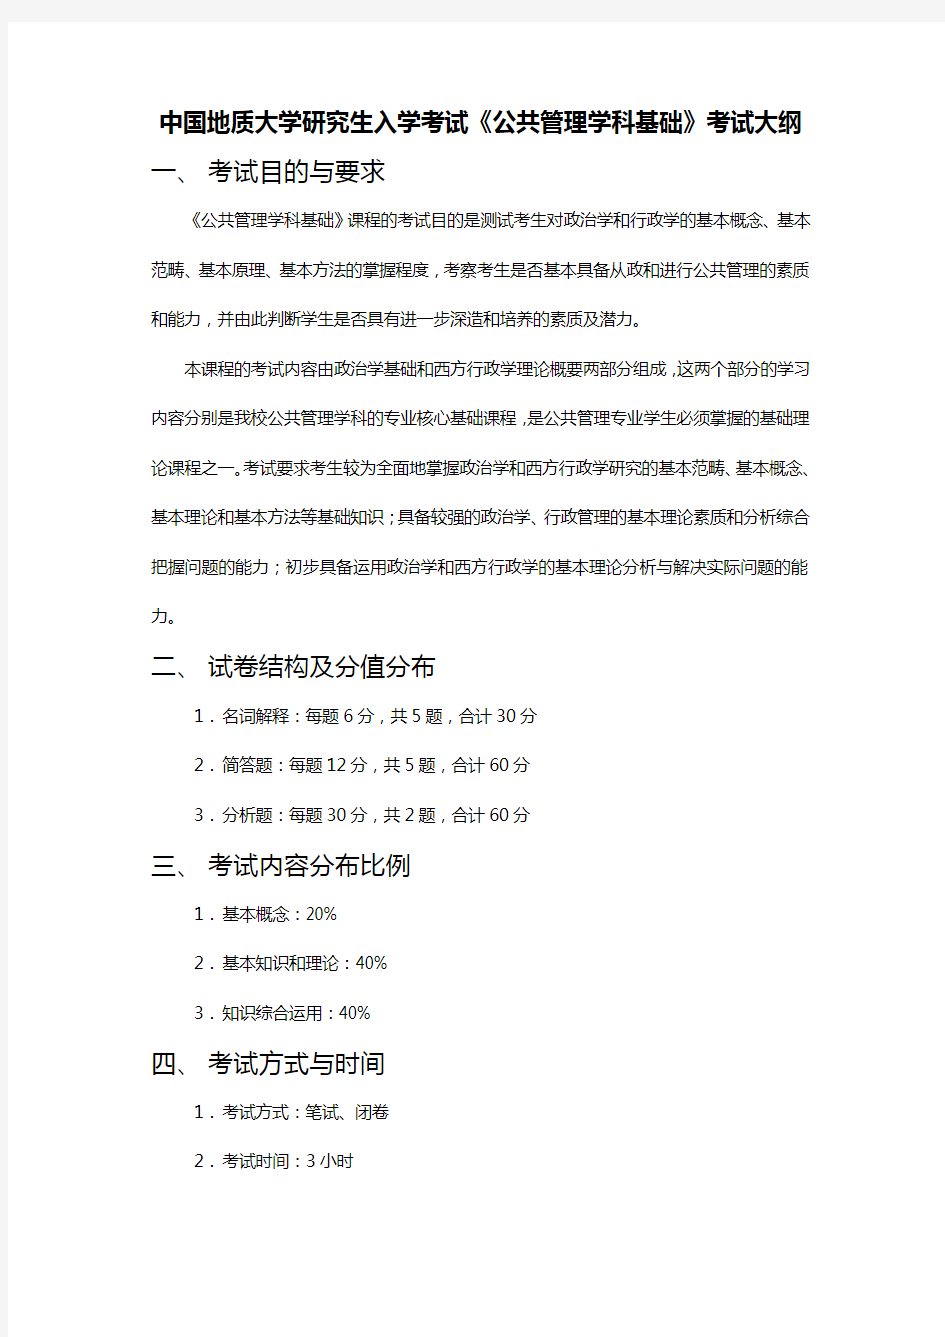 中国地质大学(武汉)615 公共管理学科基础 考试大纲